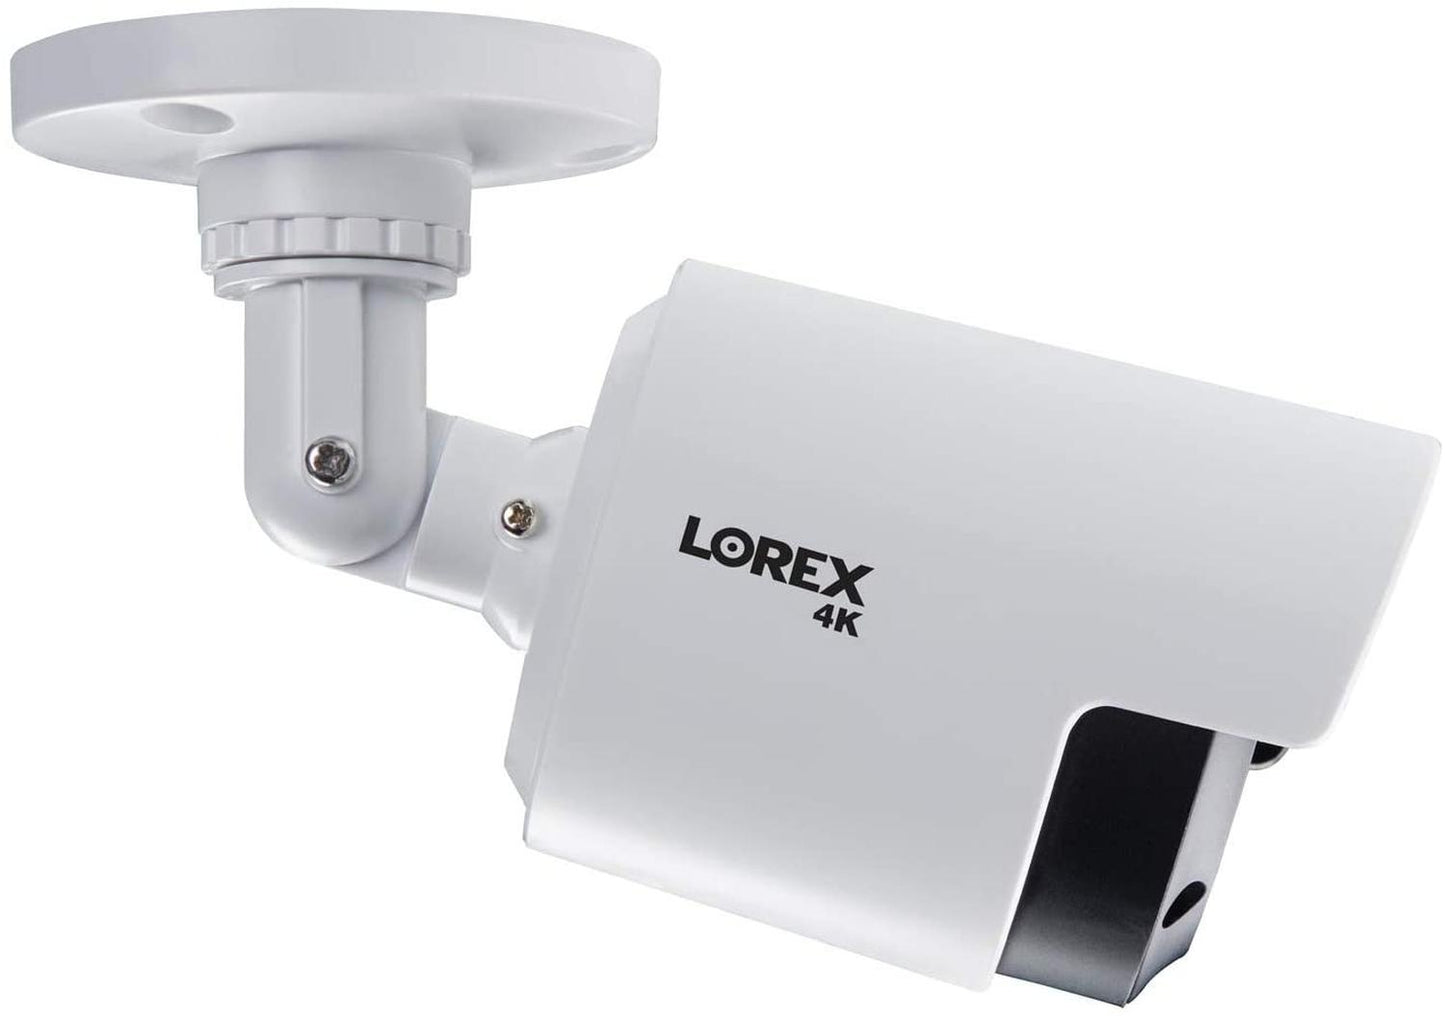 Sistema de seguridad Lorex,1 grabadora de video digital